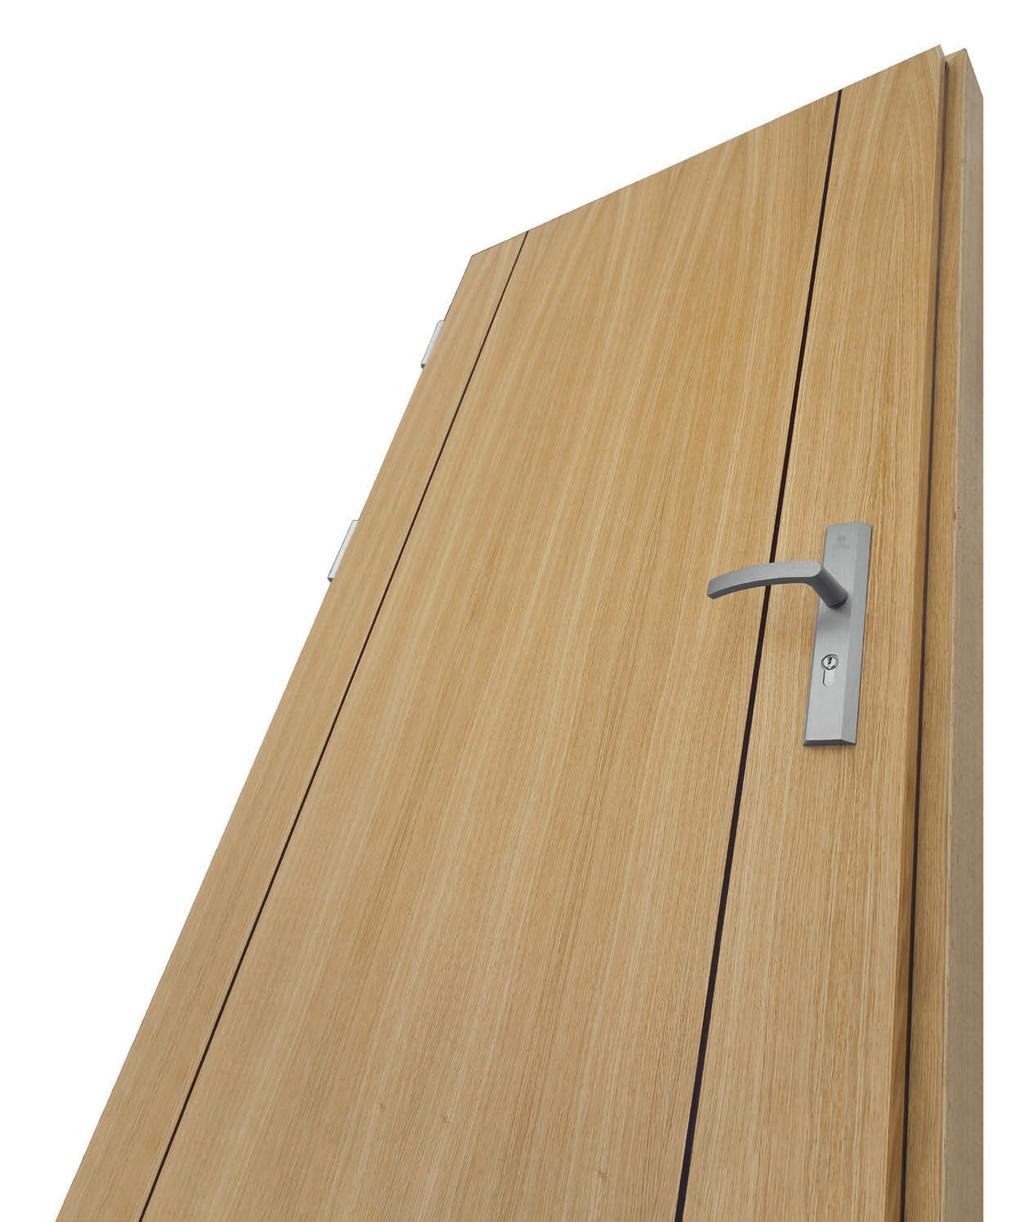 DRZWI WEWNĘTRZNE DRZWI KLATKOWE Drzwi klatkowe dedykowane są miłośnikom współczesnych wnętrz. Konstrukcje drzwi są w 100% drewniane. Drzwi występują w dwóch wersjach wykończenia sosnowej lub dębowej.